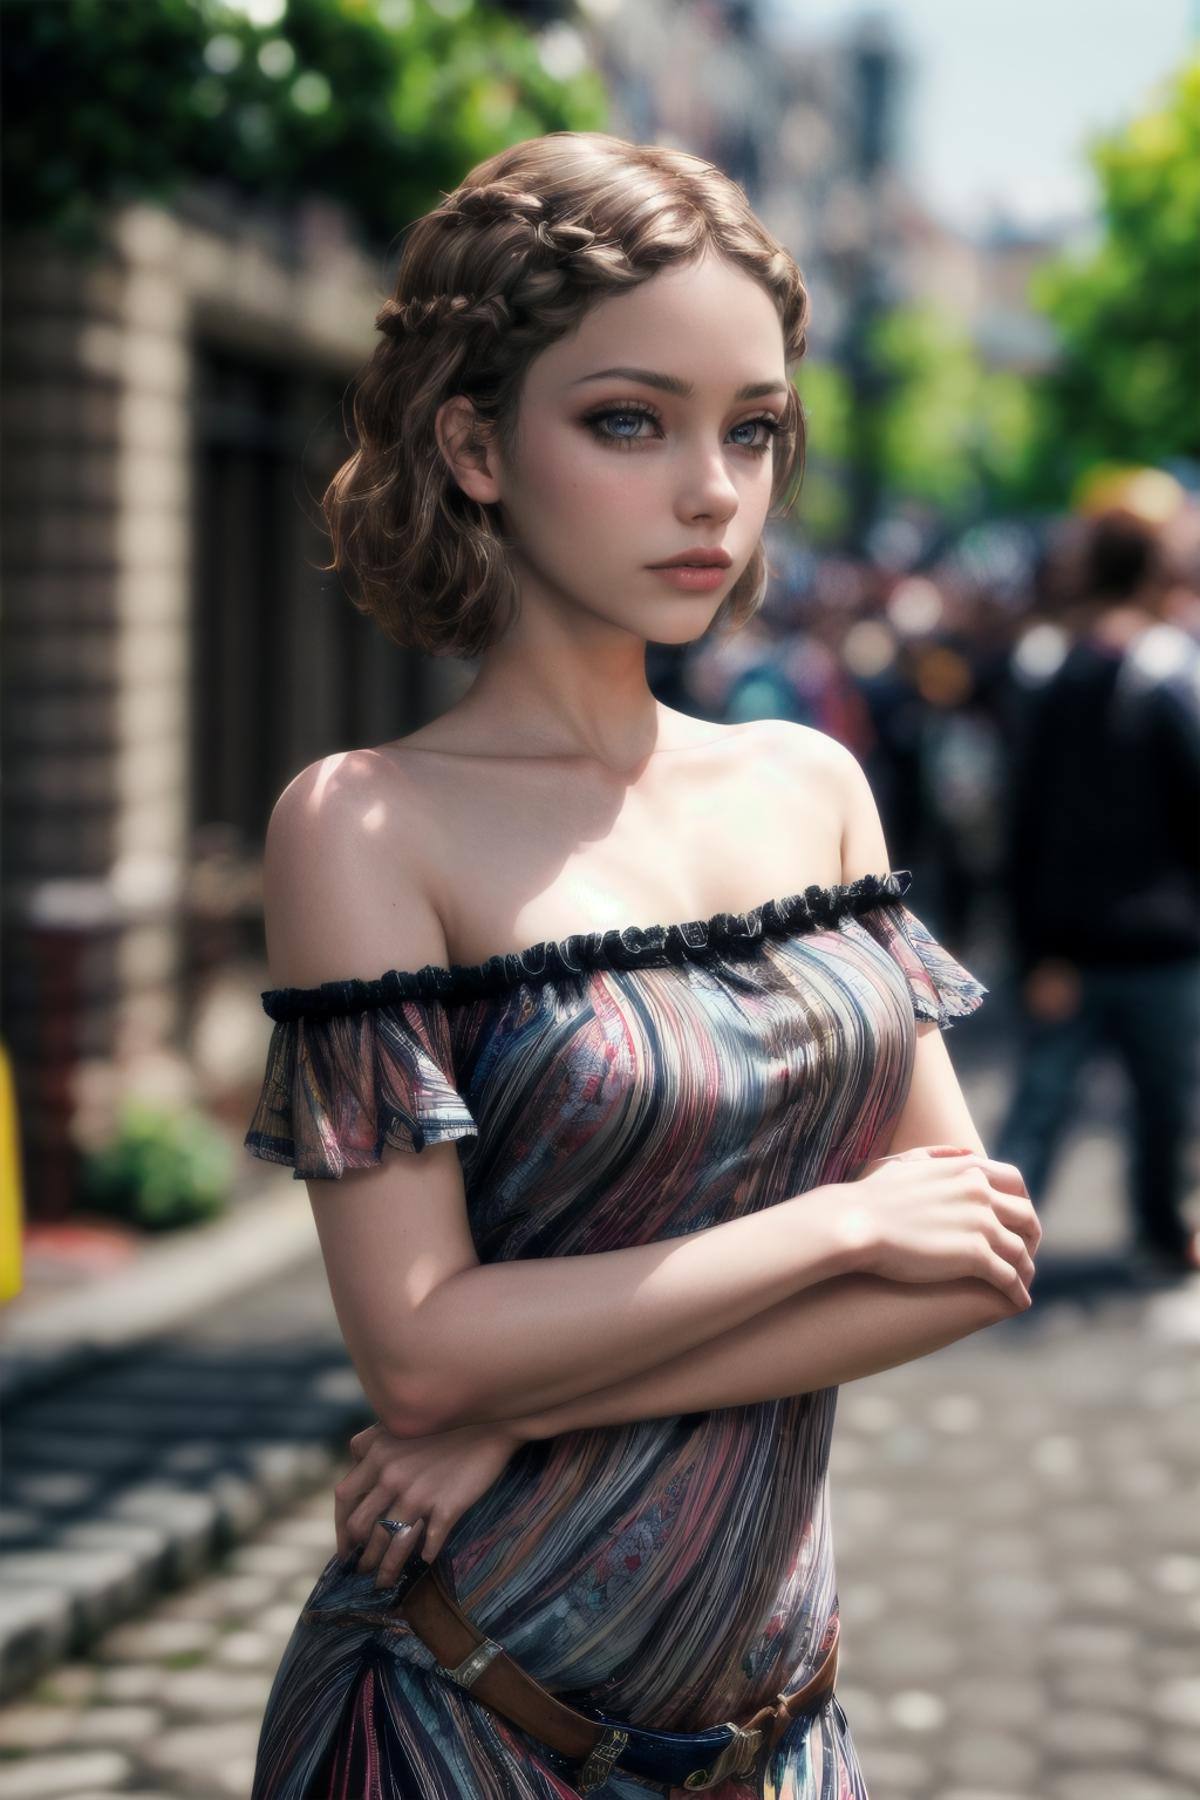 AI model image by YuruSama